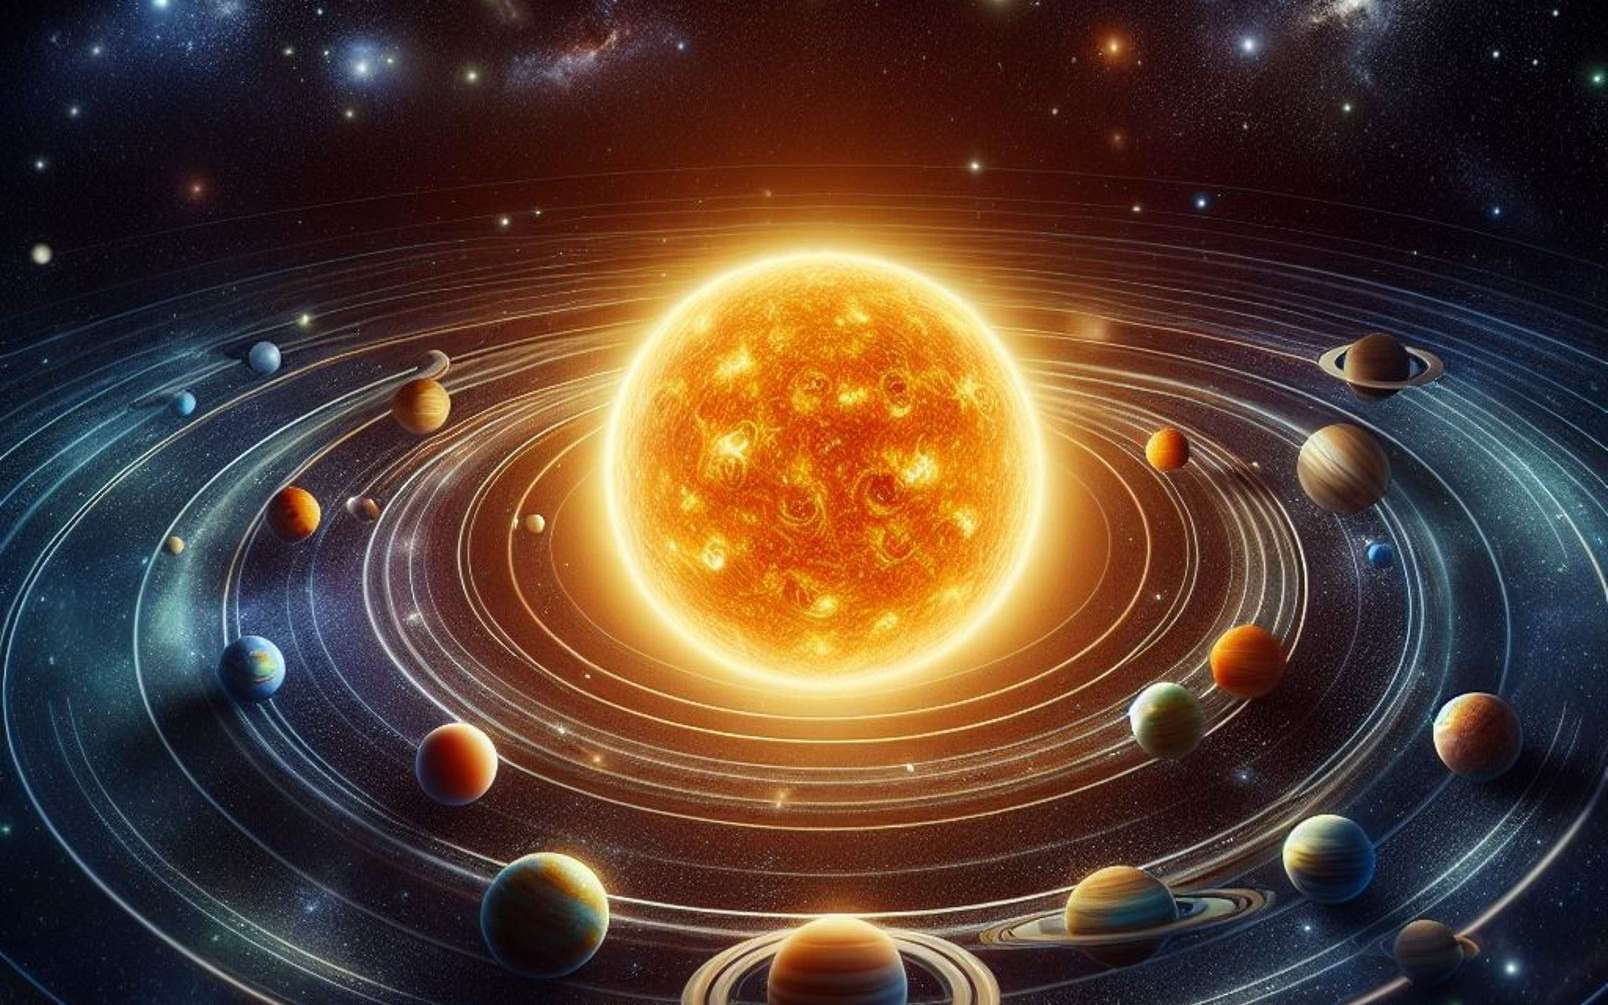 Des étoiles auraient modifié l'orbite et le climat passés de la Terre